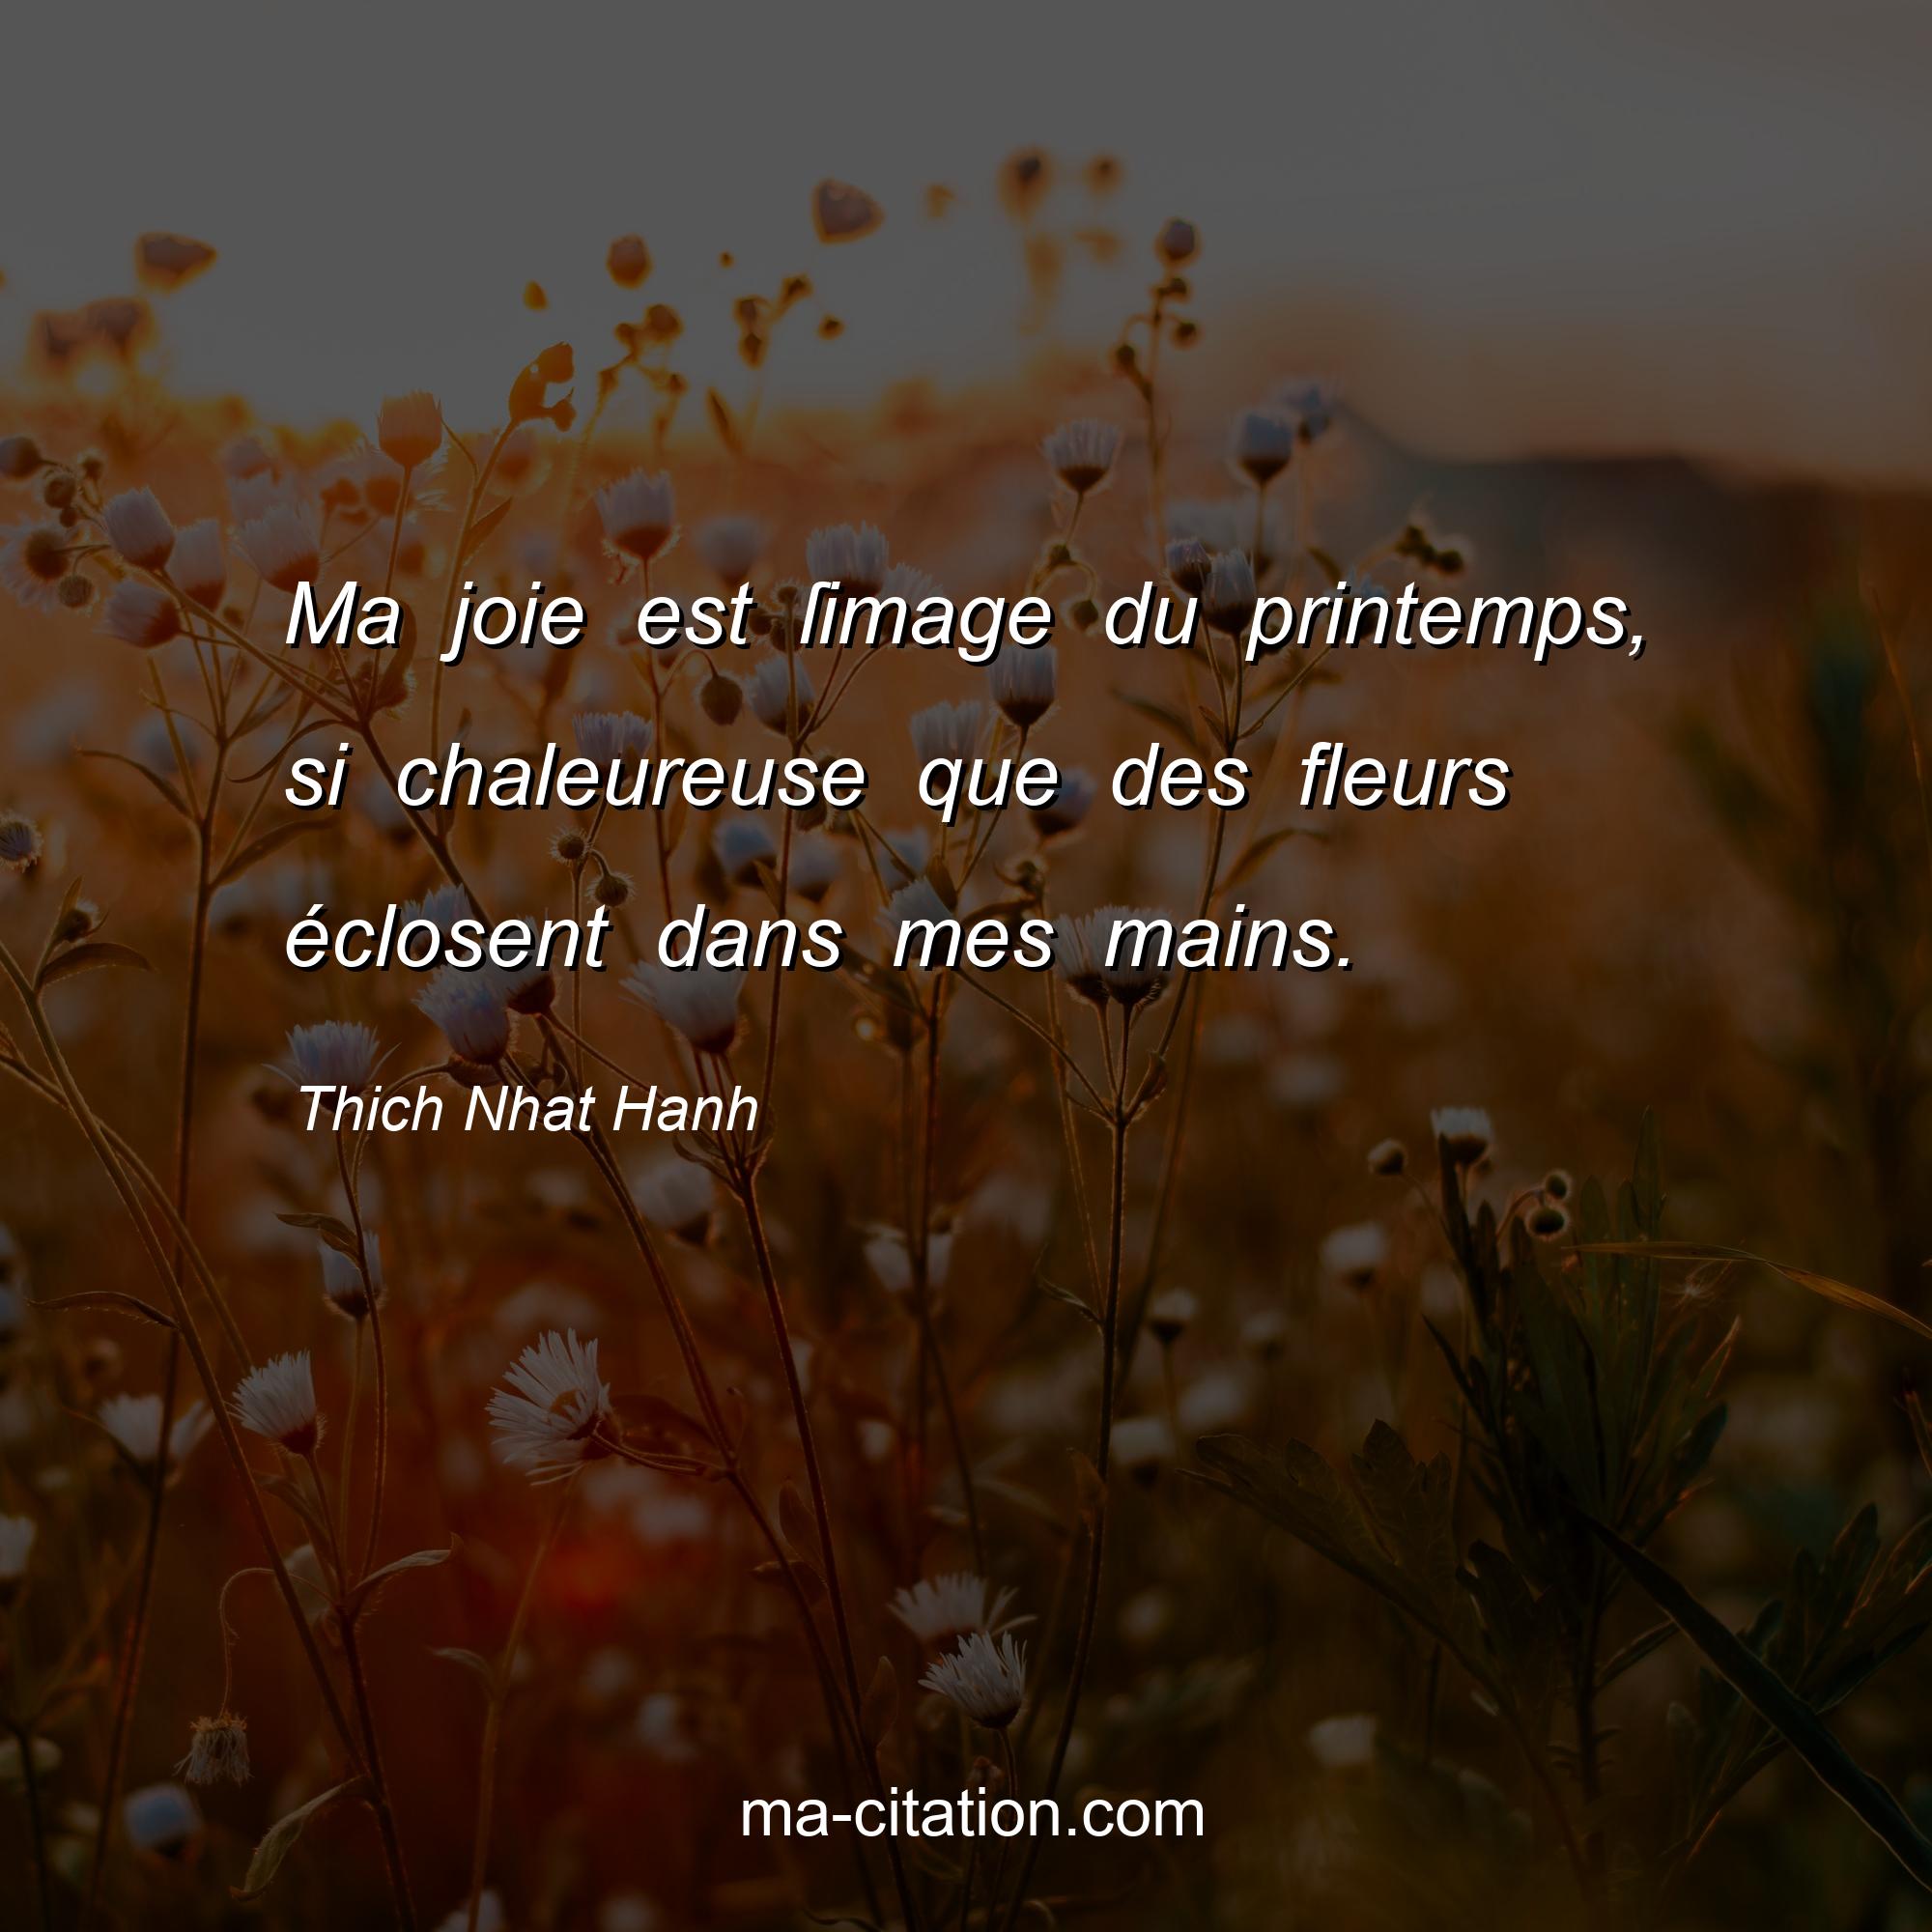 Thich Nhat Hanh : Ma joie est ſimage du printemps, si chaleureuse que des fleurs éclosent dans mes mains.